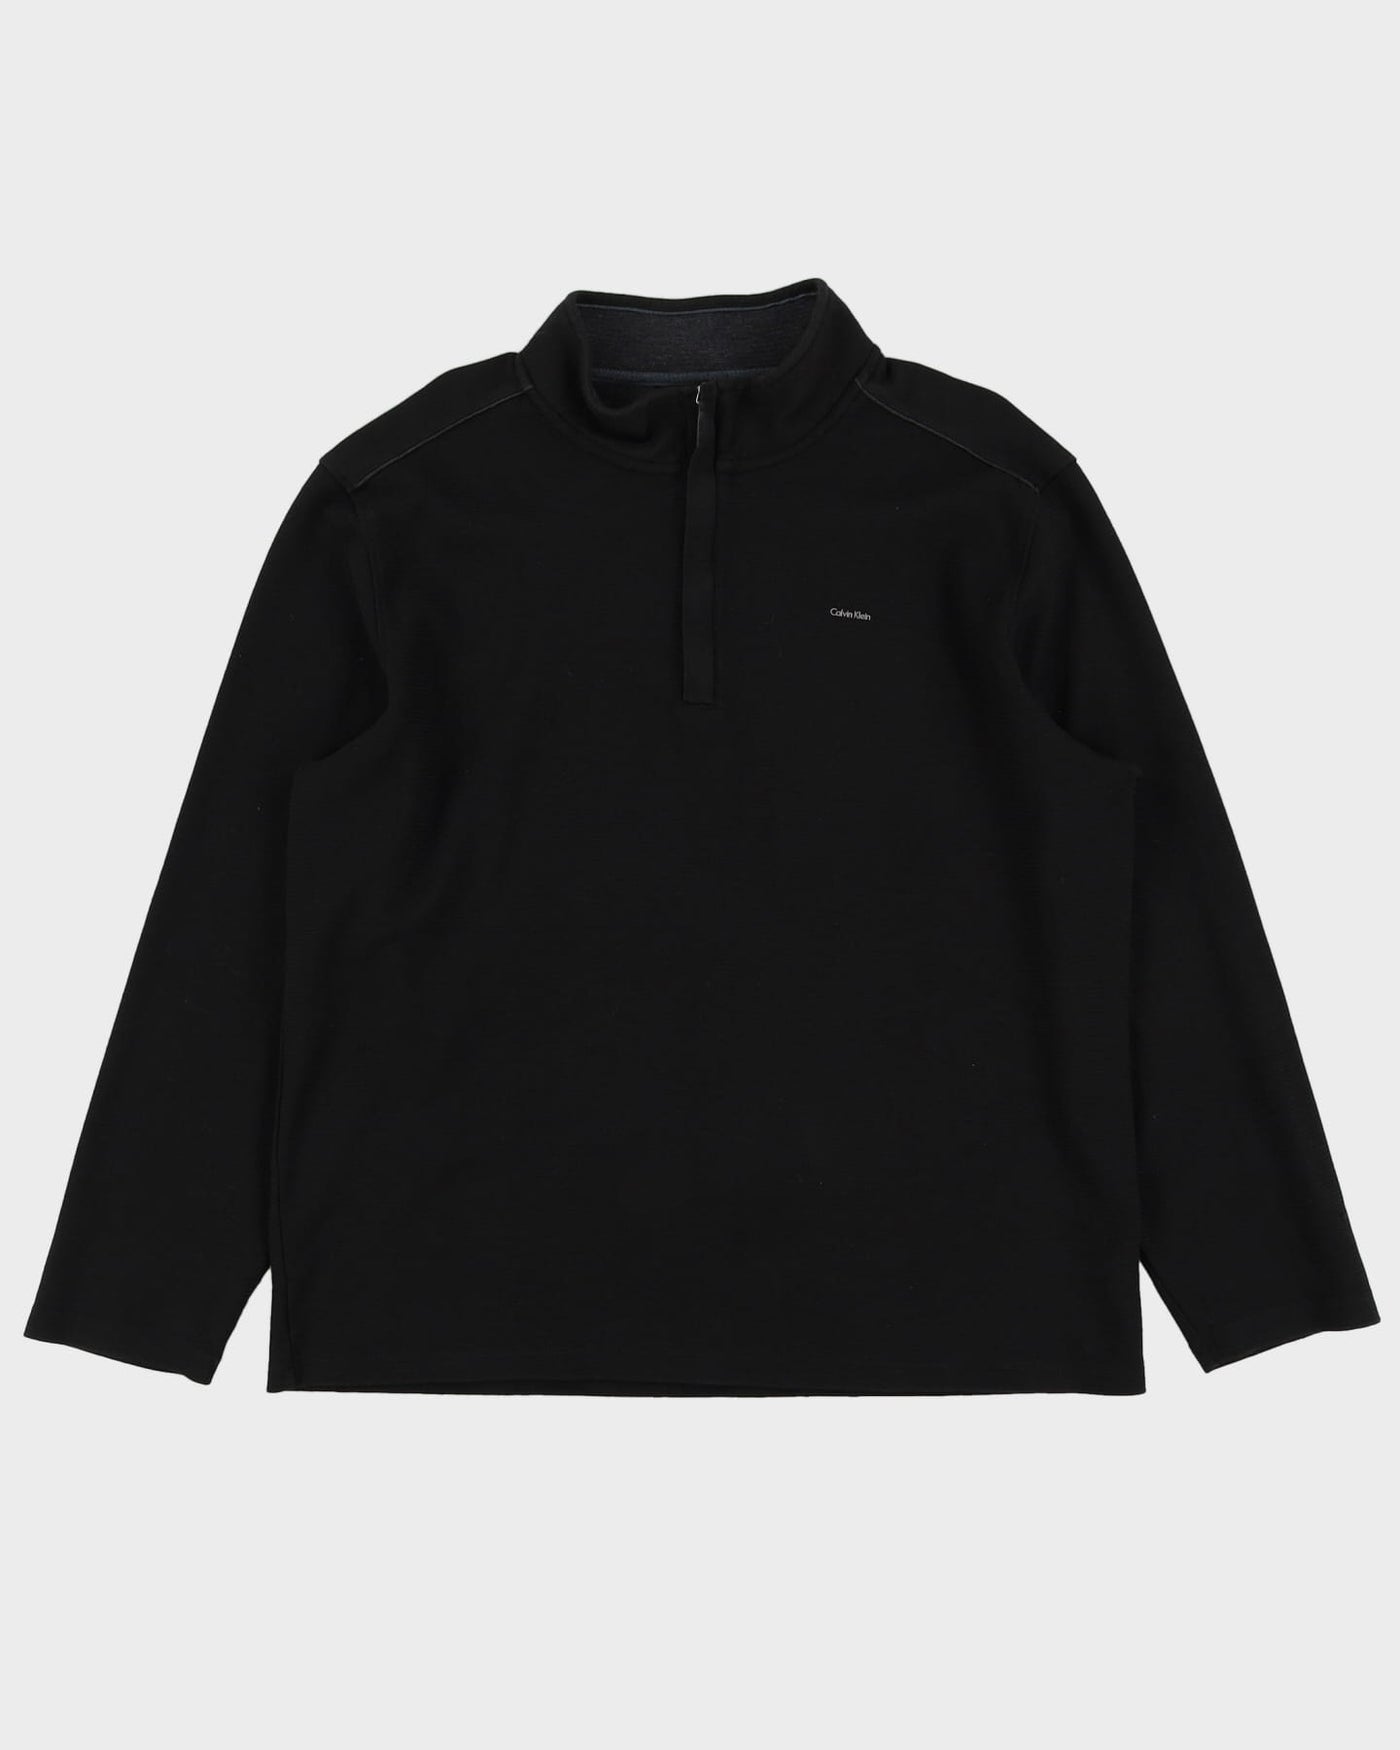 Calvin Klein Black Quarter-Zip Sweatshirt - XL